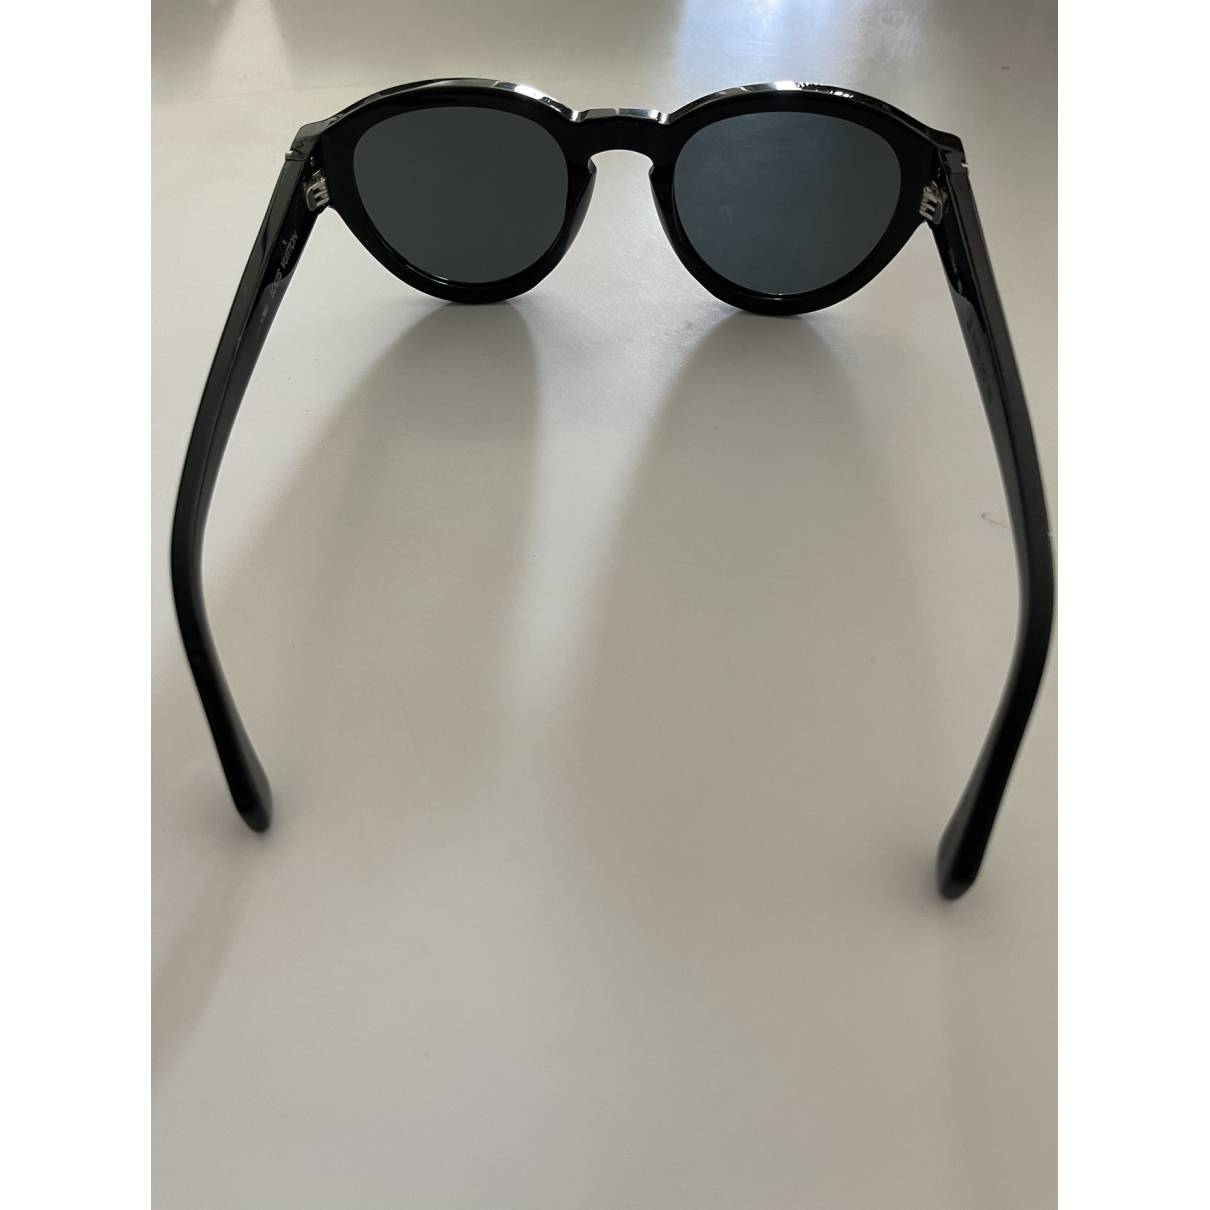 Sunglasses Louis Vuitton Black in Plastic - 23463294